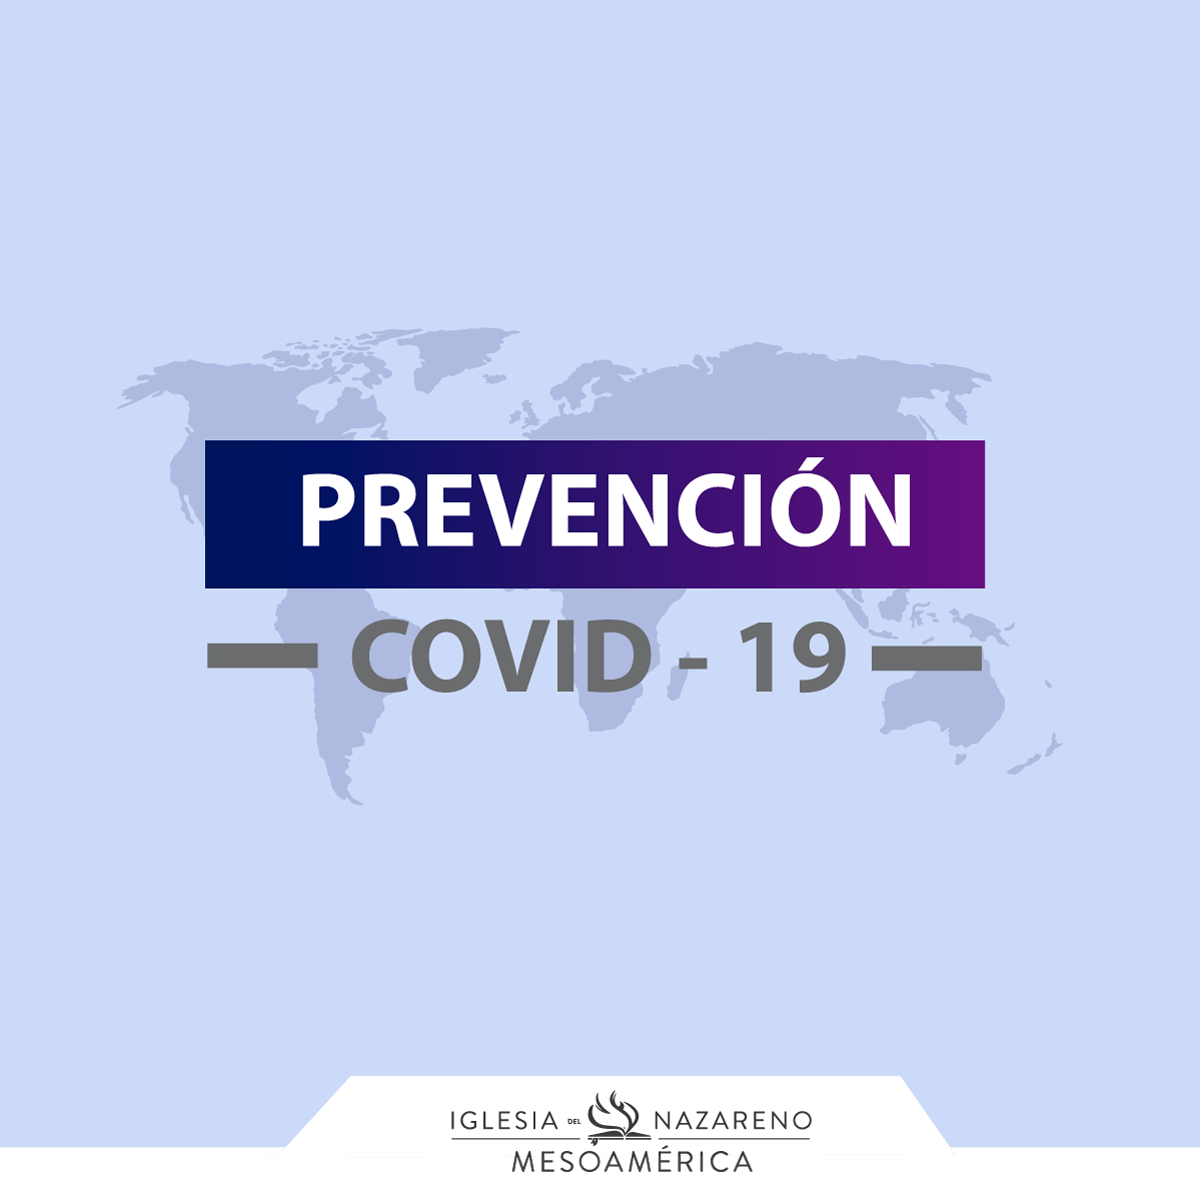 Prevención Covid-19